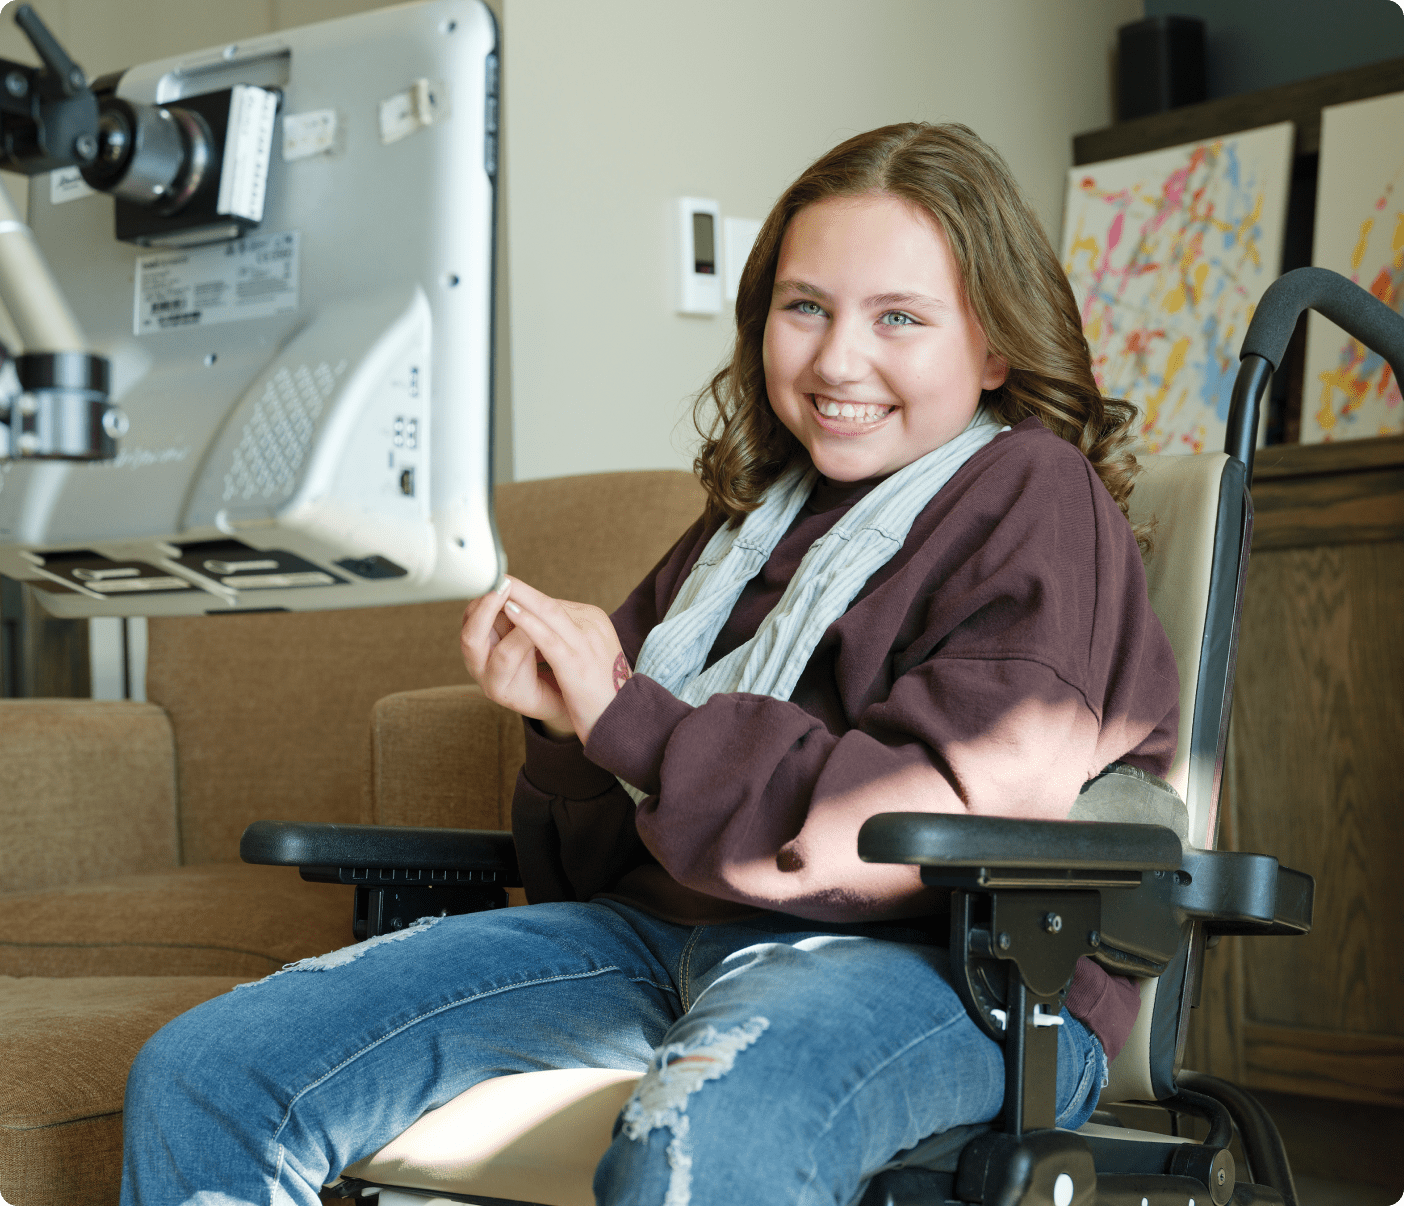 Olivia, tout sourire dans son fauteuil roulant, pendant qu’elle utilise la technologie d’interface cerveau-machine.